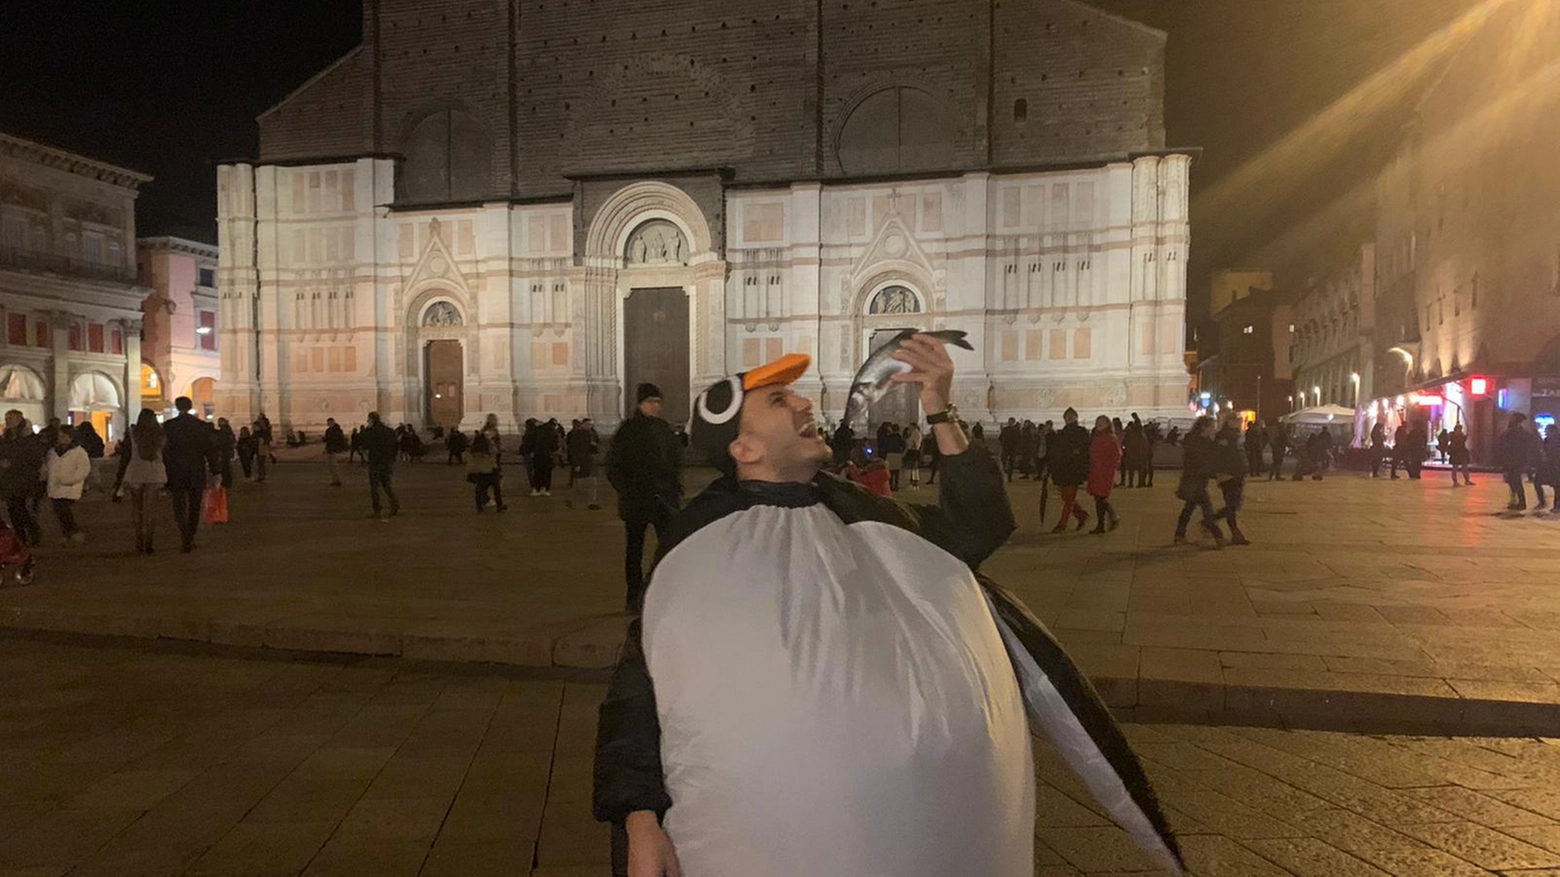 Umberto La Morgia, consigliere della Lega, in piazza Maggiore vestito da pinguino